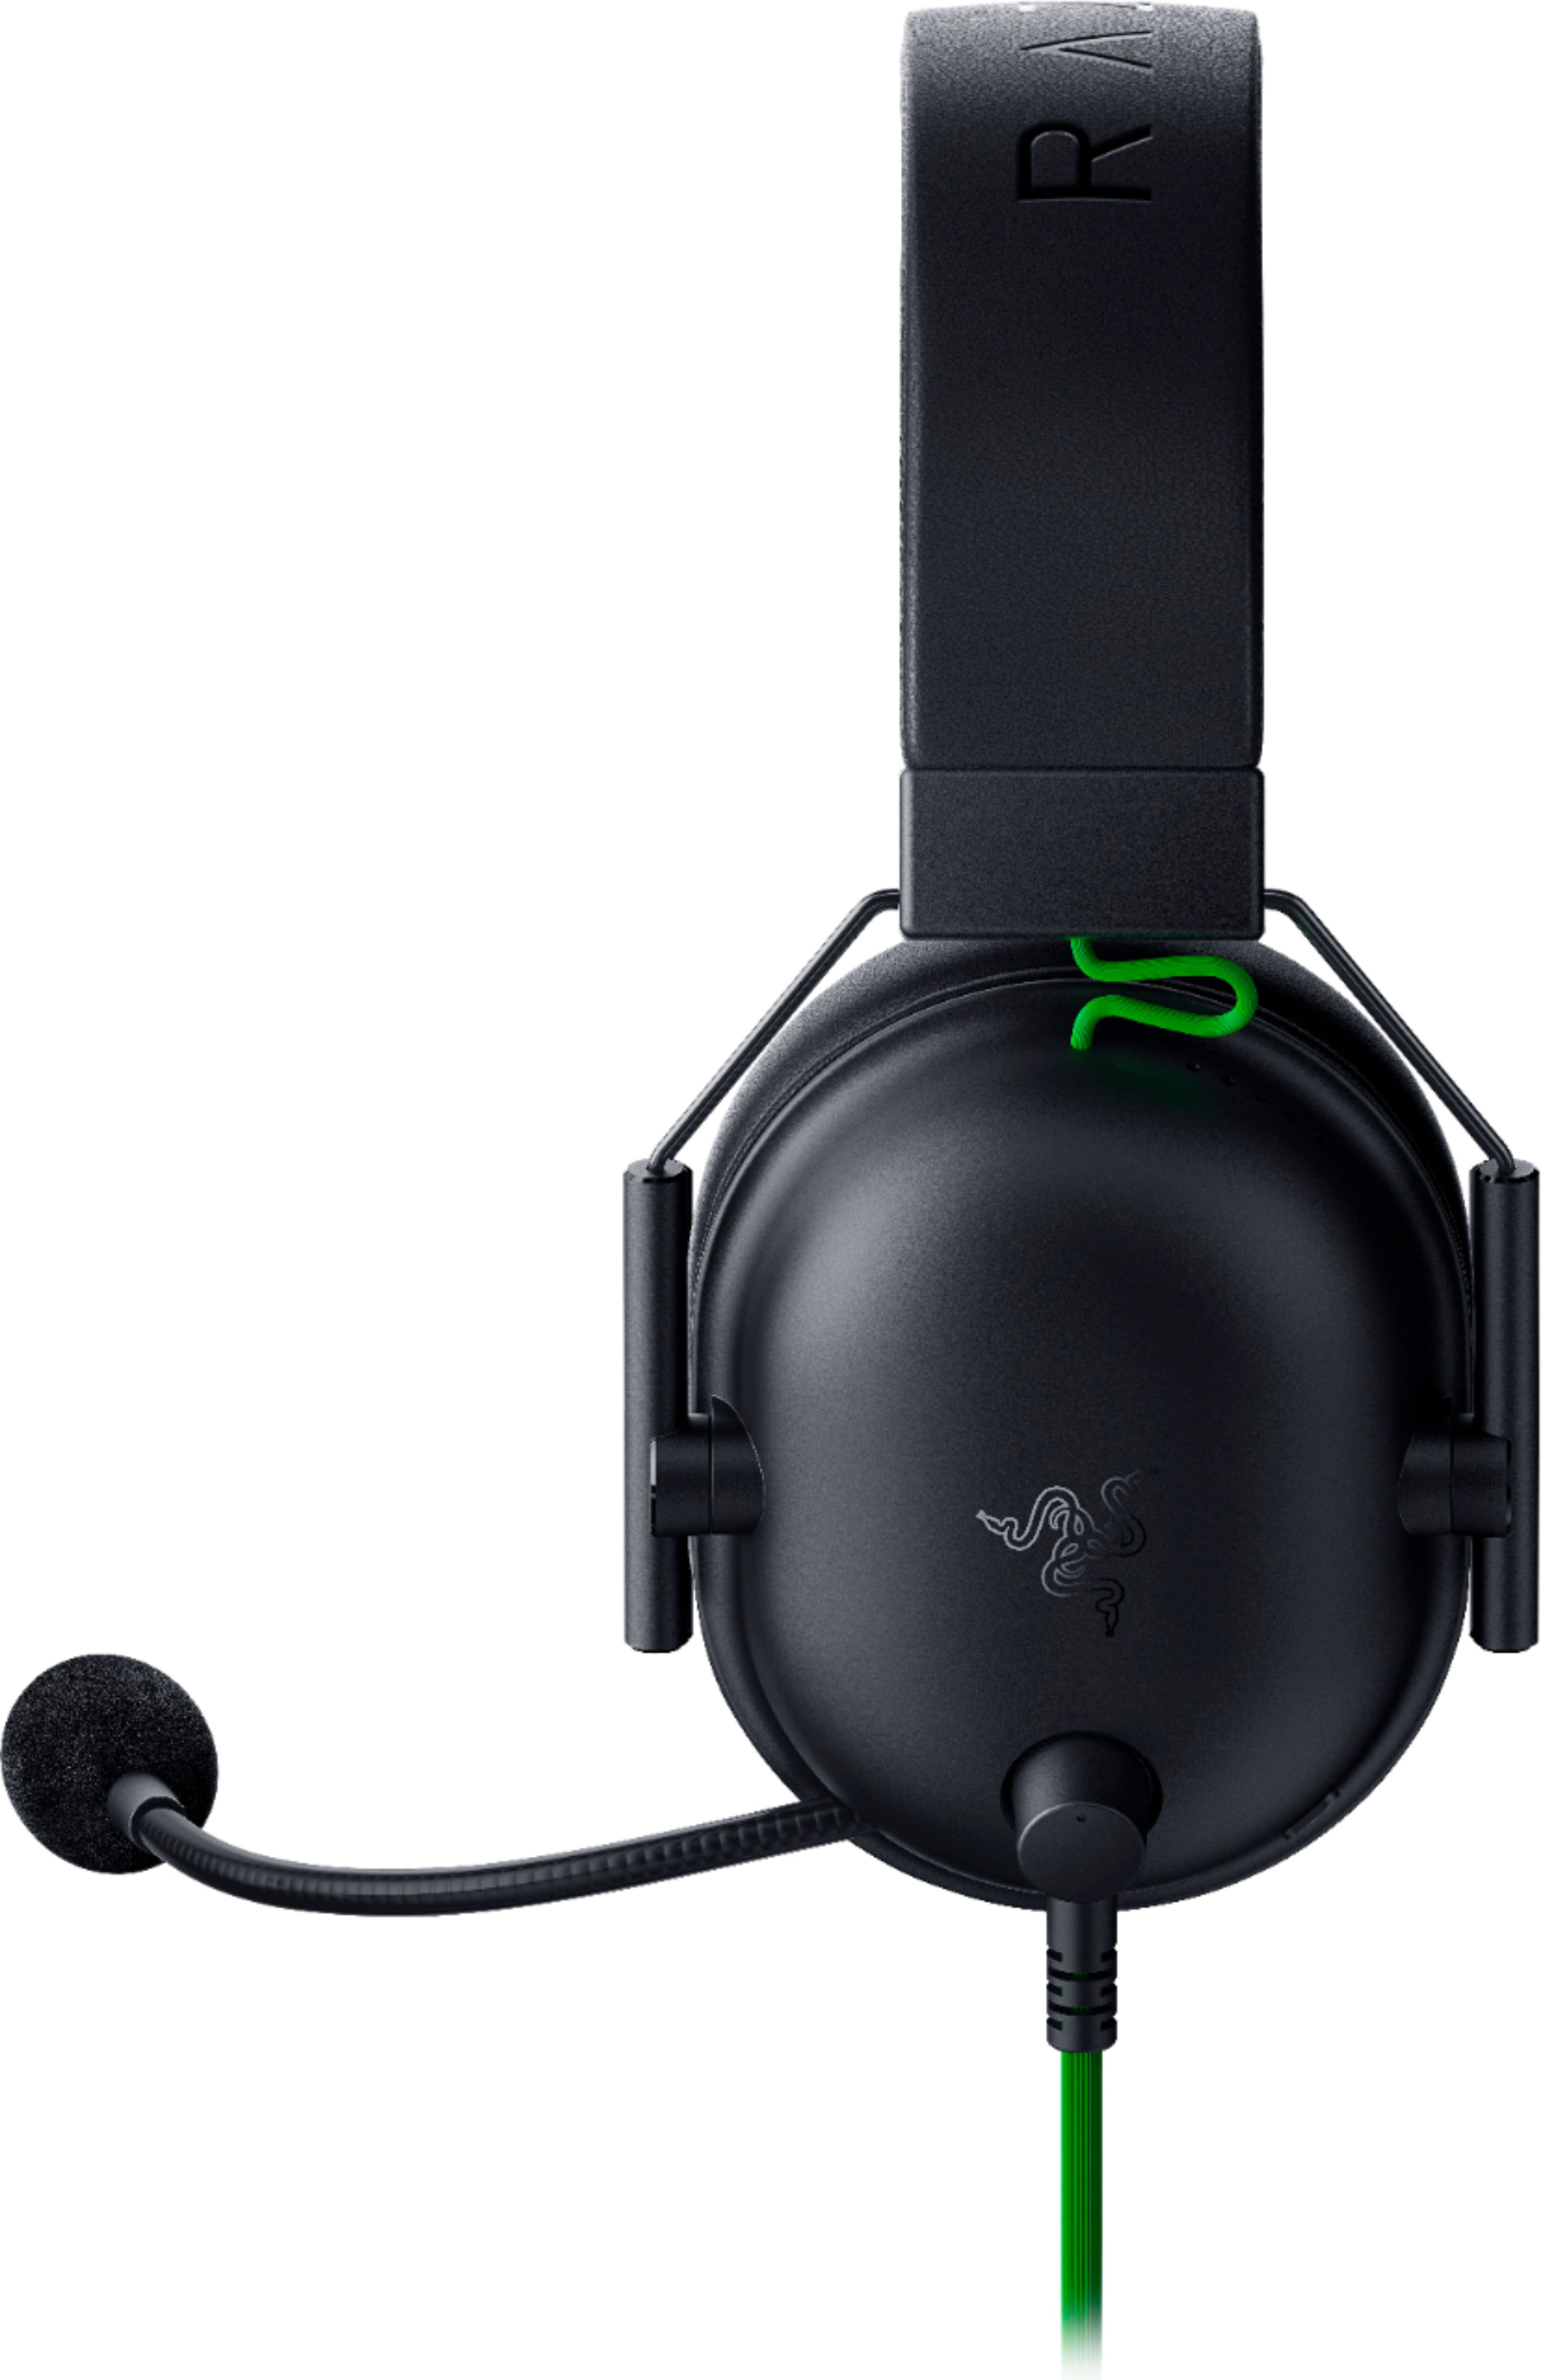 Razer Blackshark V2 Wired Gaming Headset - Gamers Hideout